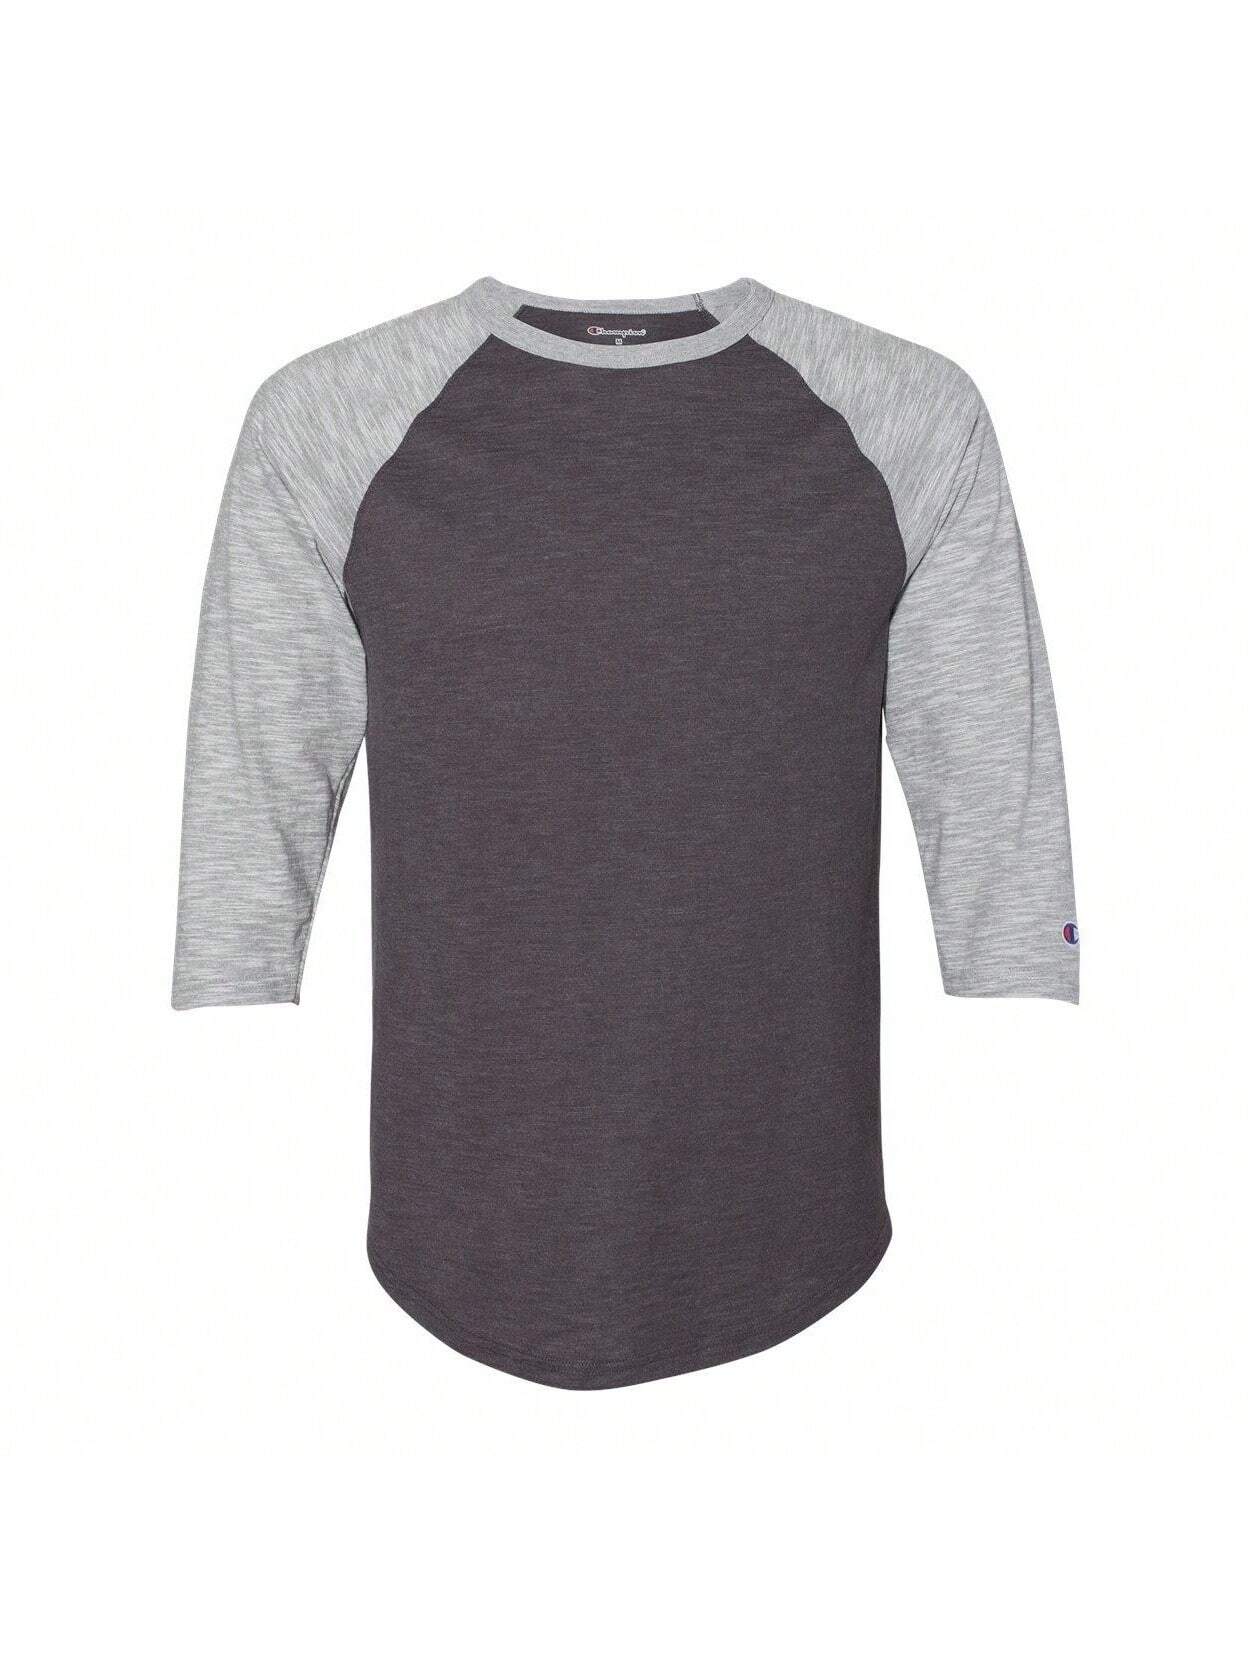 Модная бейсбольная футболка премиум-класса с рукавом три четверти реглан (угольно-хизер/серый Оксфорд), серый